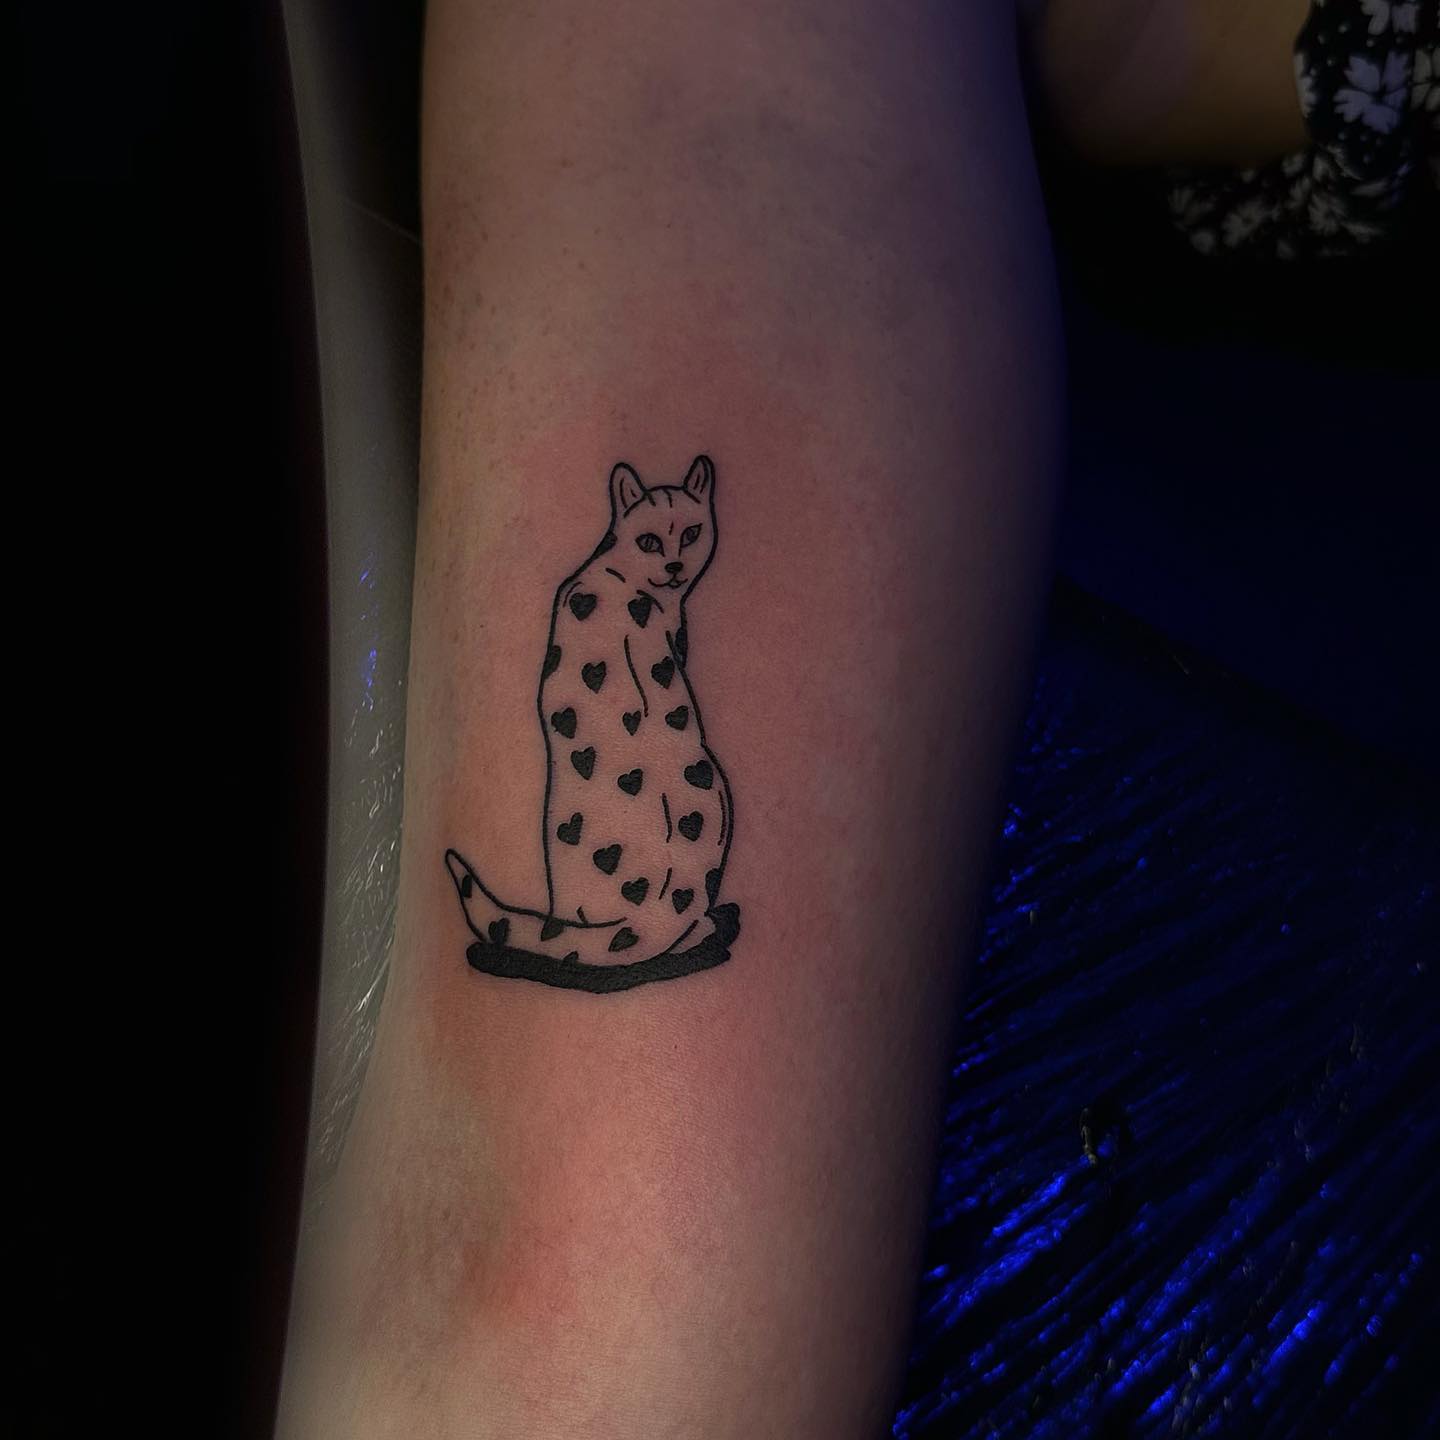 __
.
.

#tattoo #tattooideas #cat #catlover #cattattoo #tattooinspiration #tatto